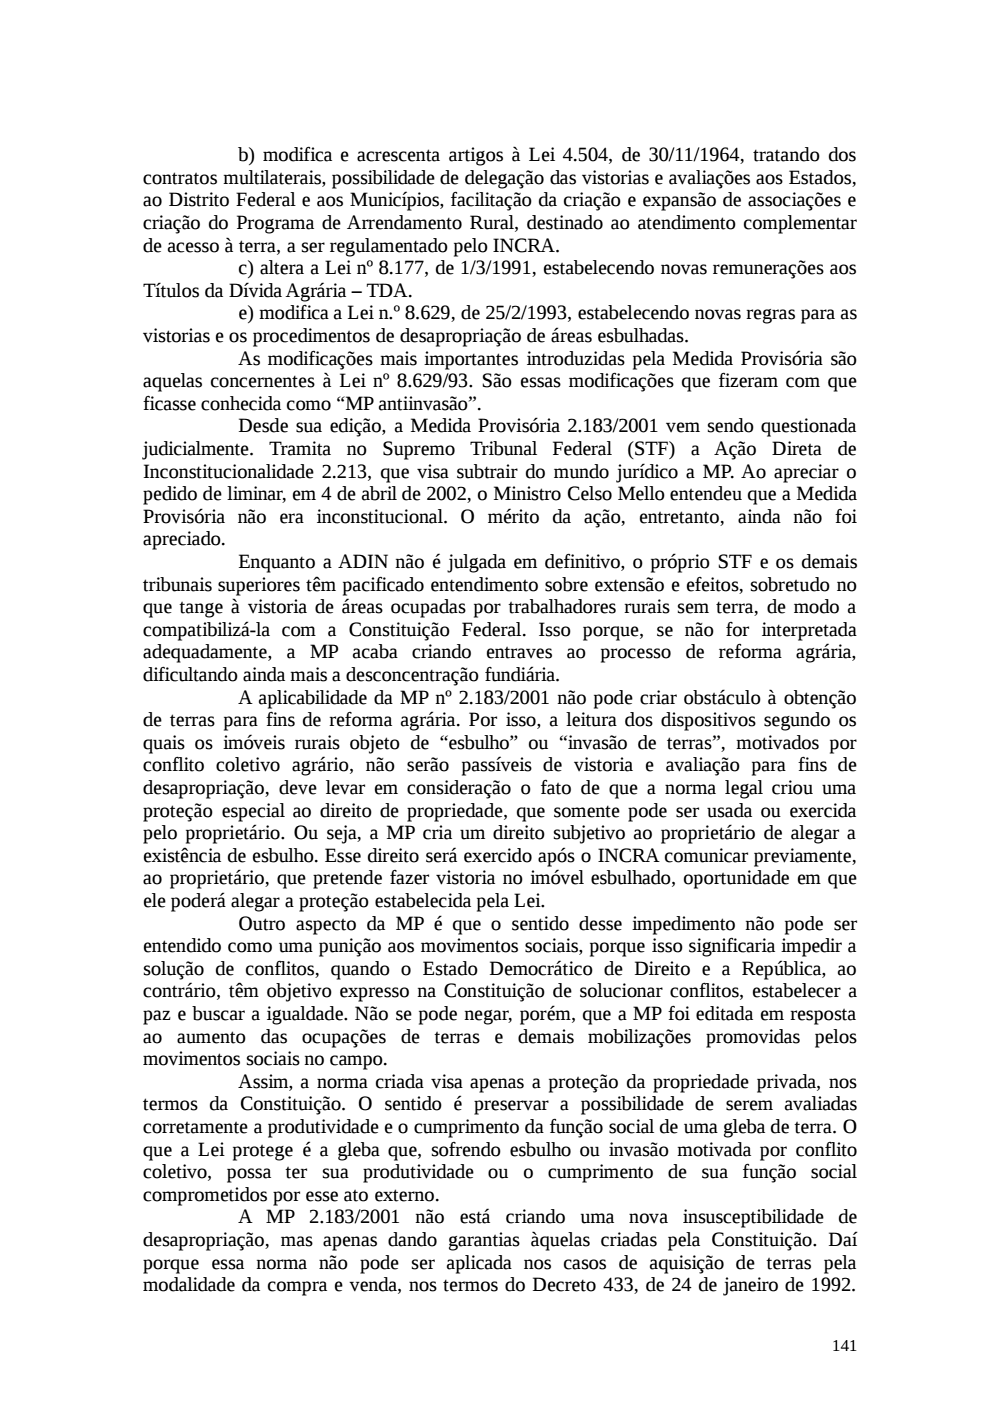 Page 141 from Relatório final da comissão